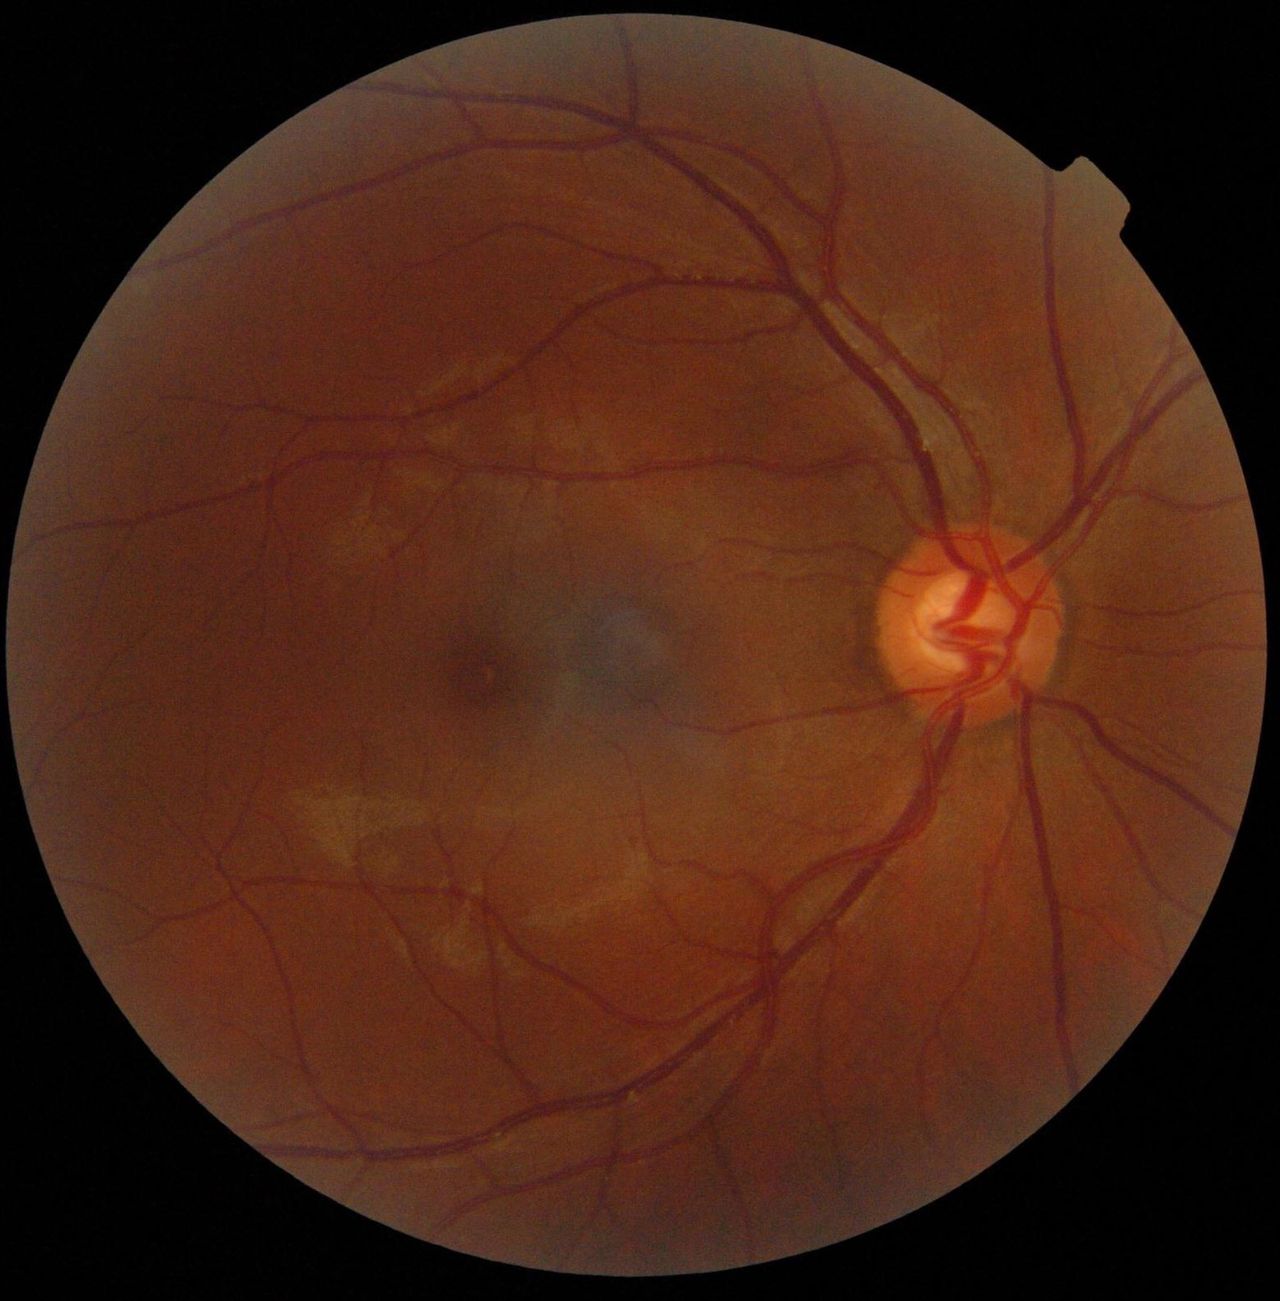 Tarcza nerwu wzrokowego pozbawiona jest fotoreceptorów